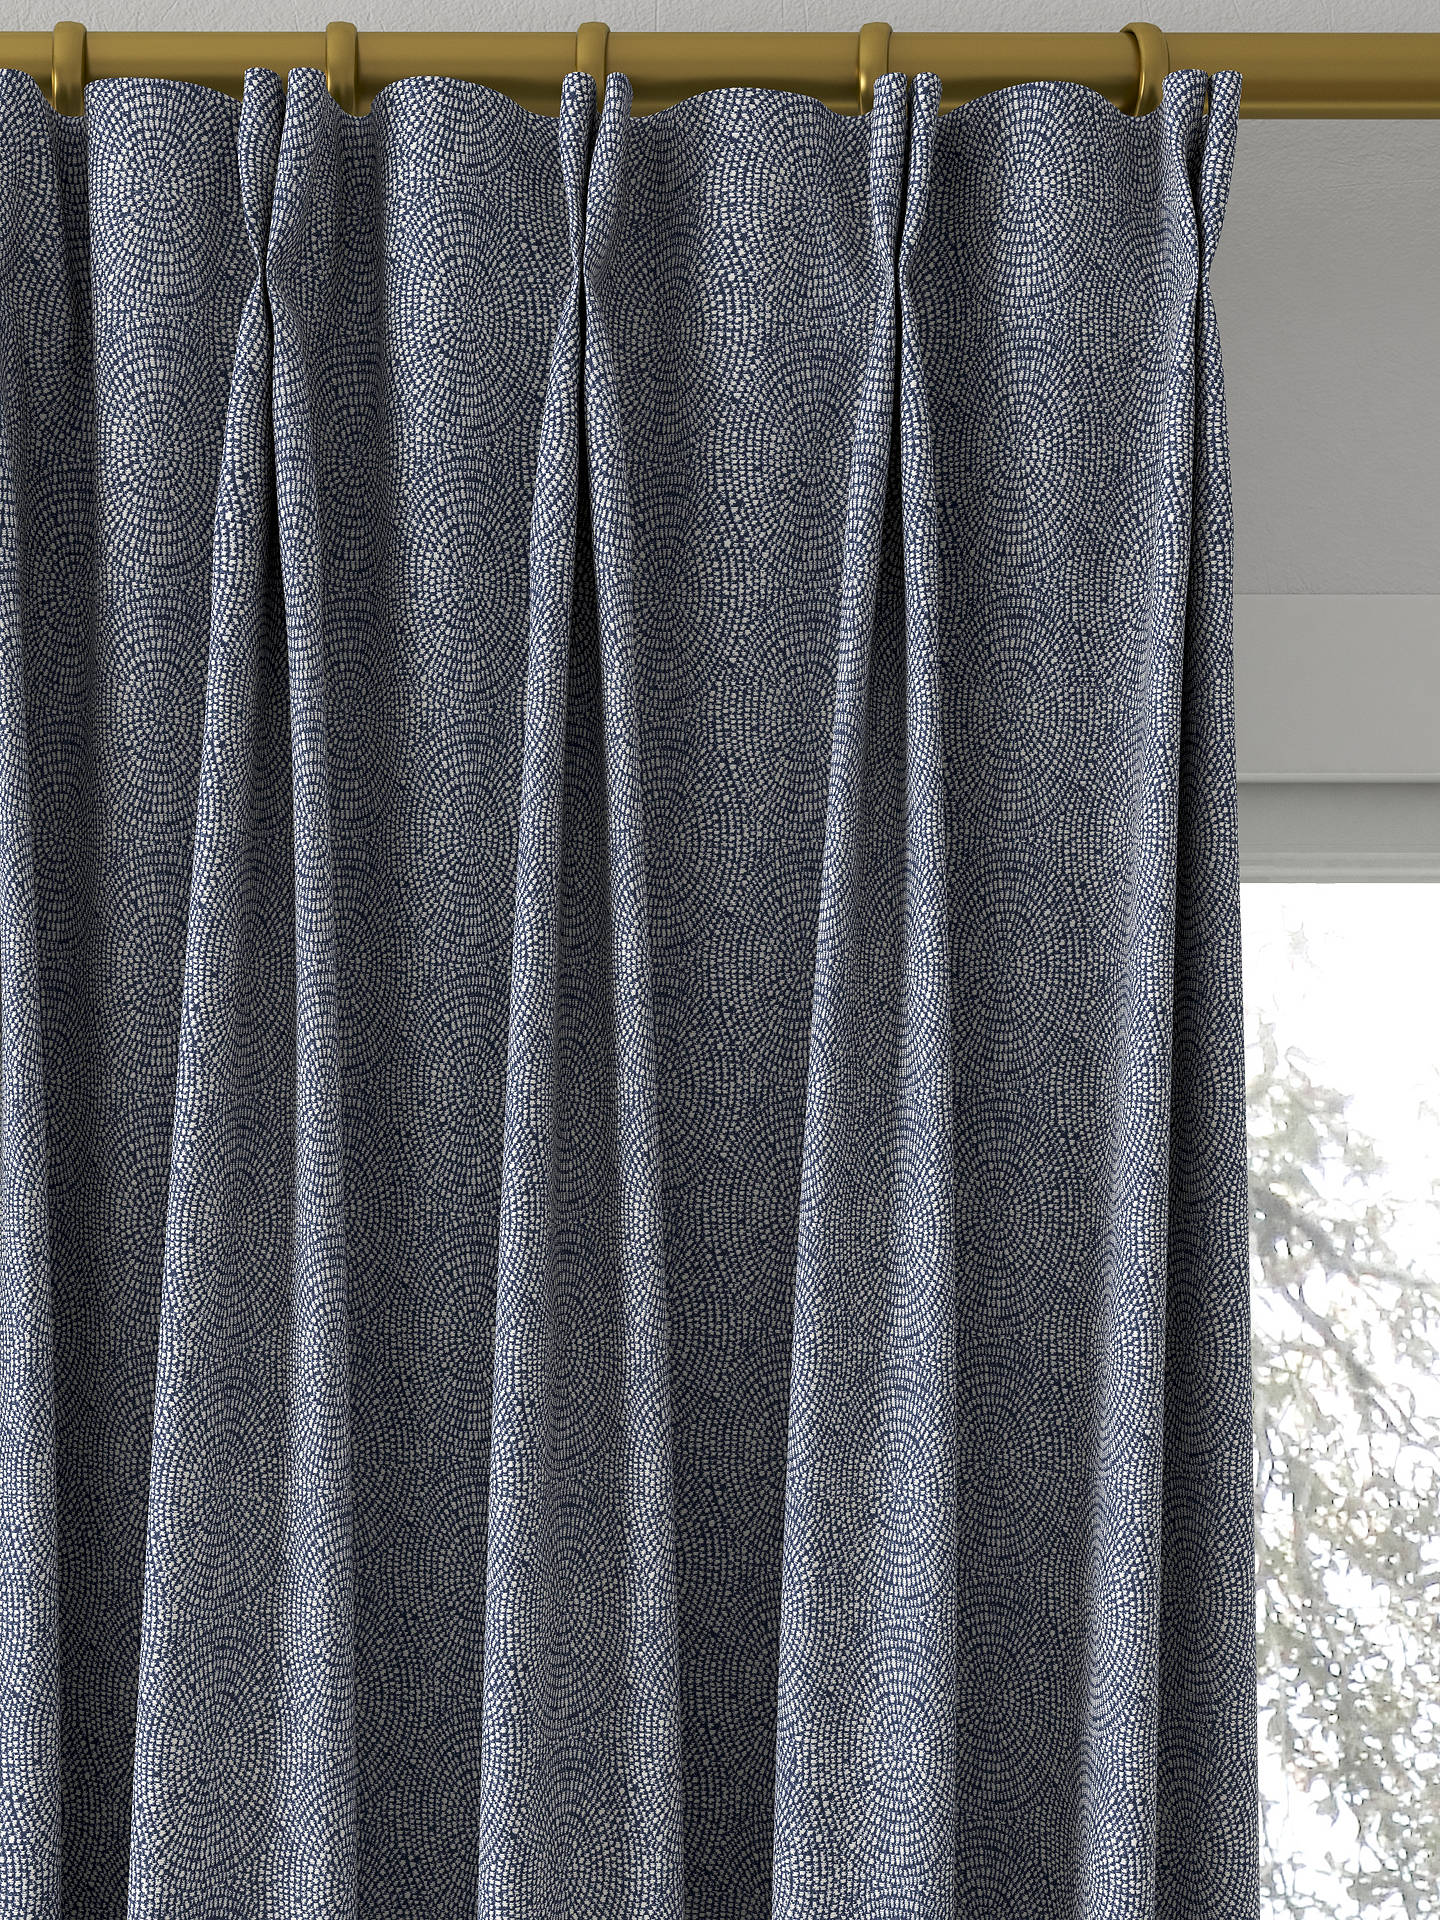 Prestigious Textiles Endless Made to Measure Curtains, Royal